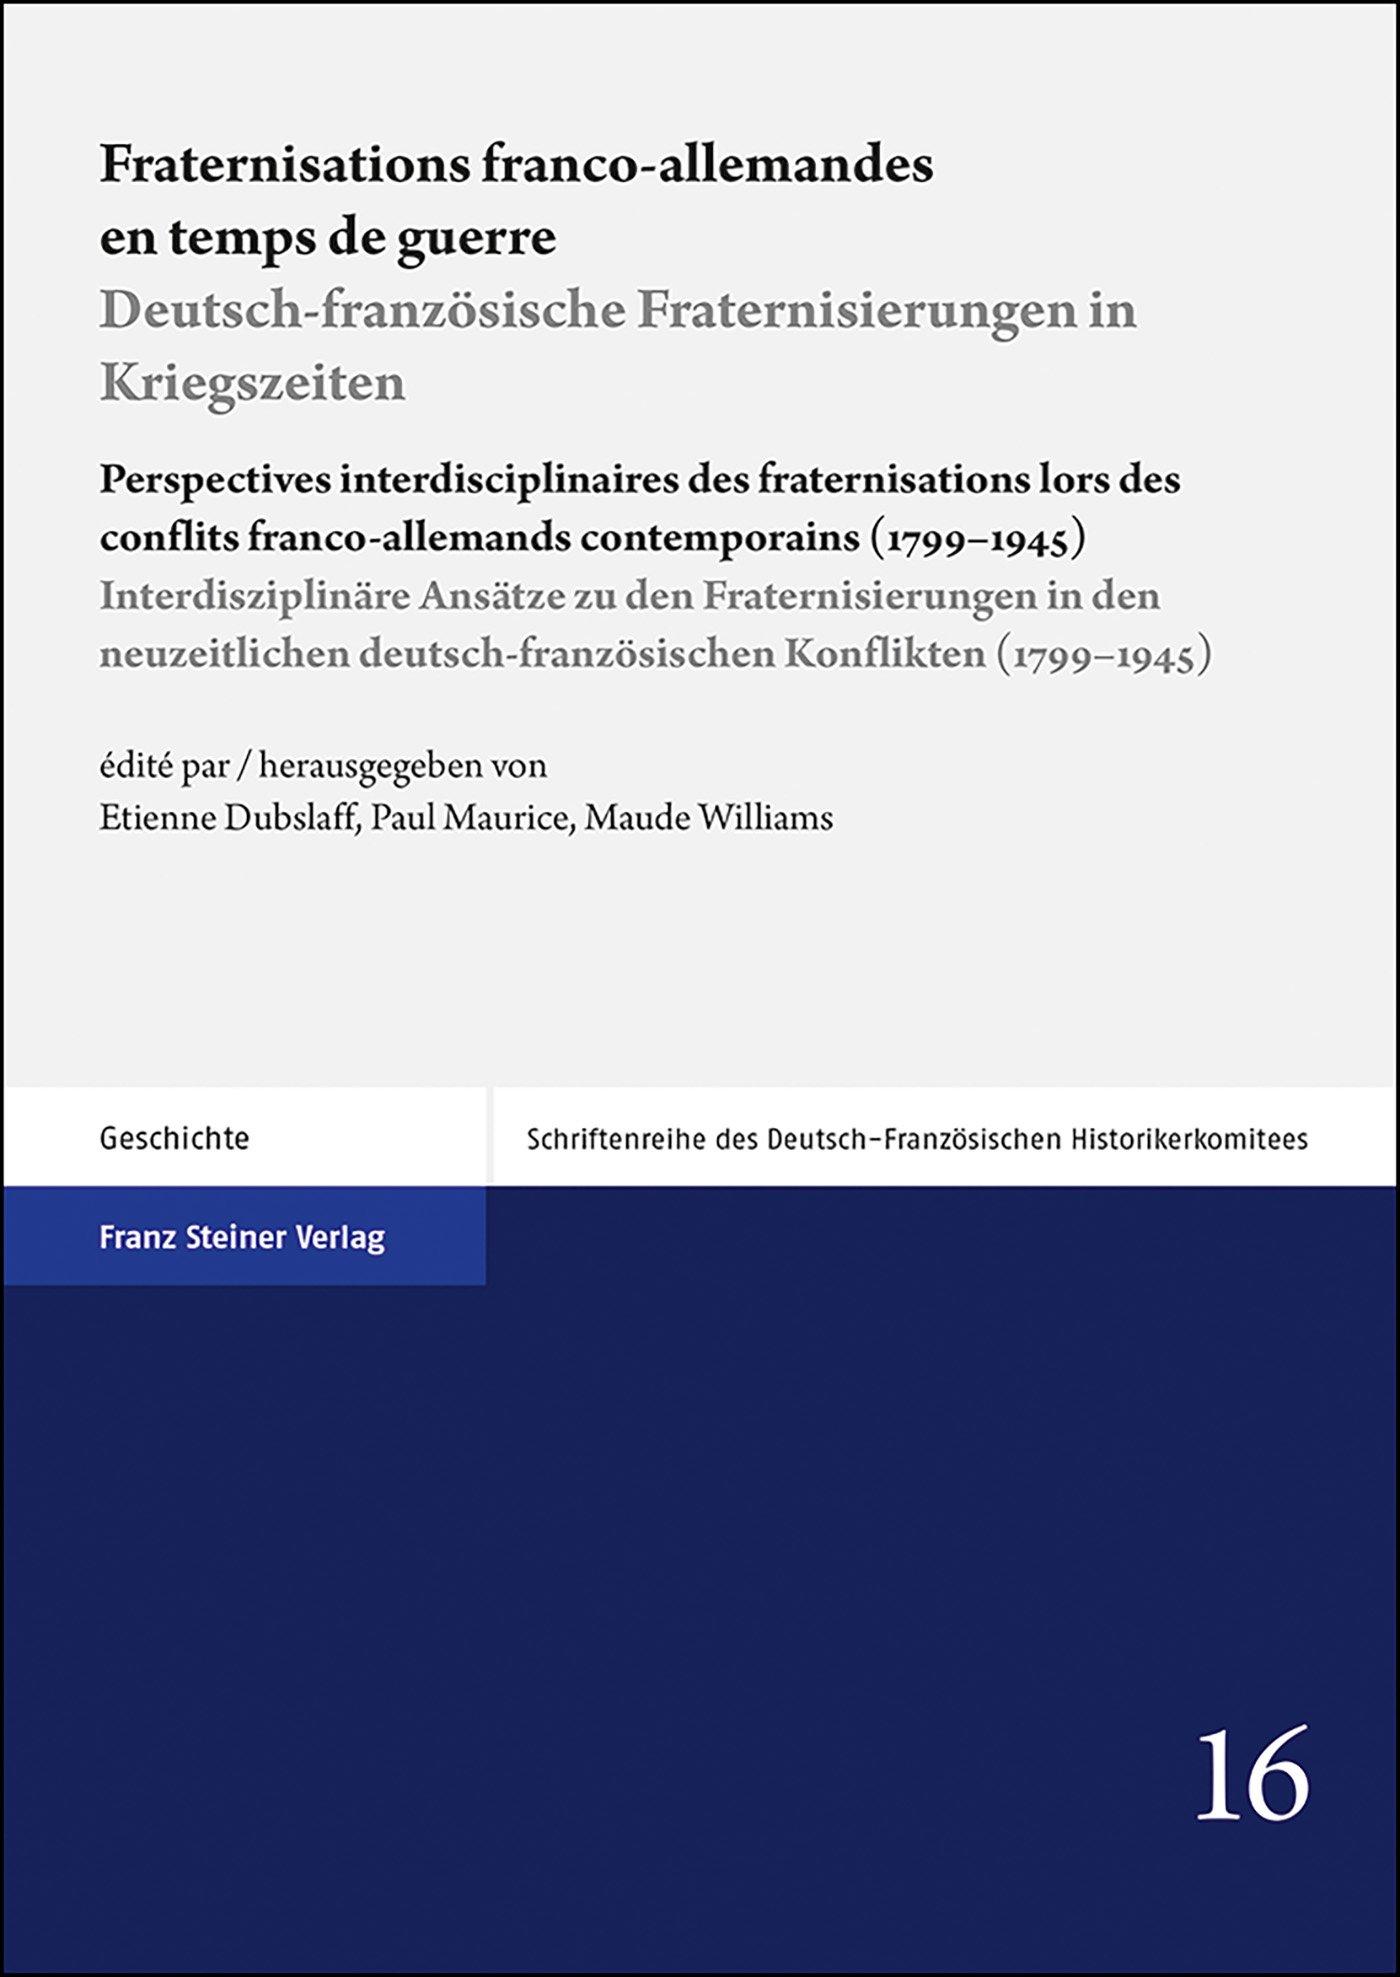 Fraternisations franco-allemandes en temps de guerre / Deutsch-französische Fraternisierungen in Kriegszeiten